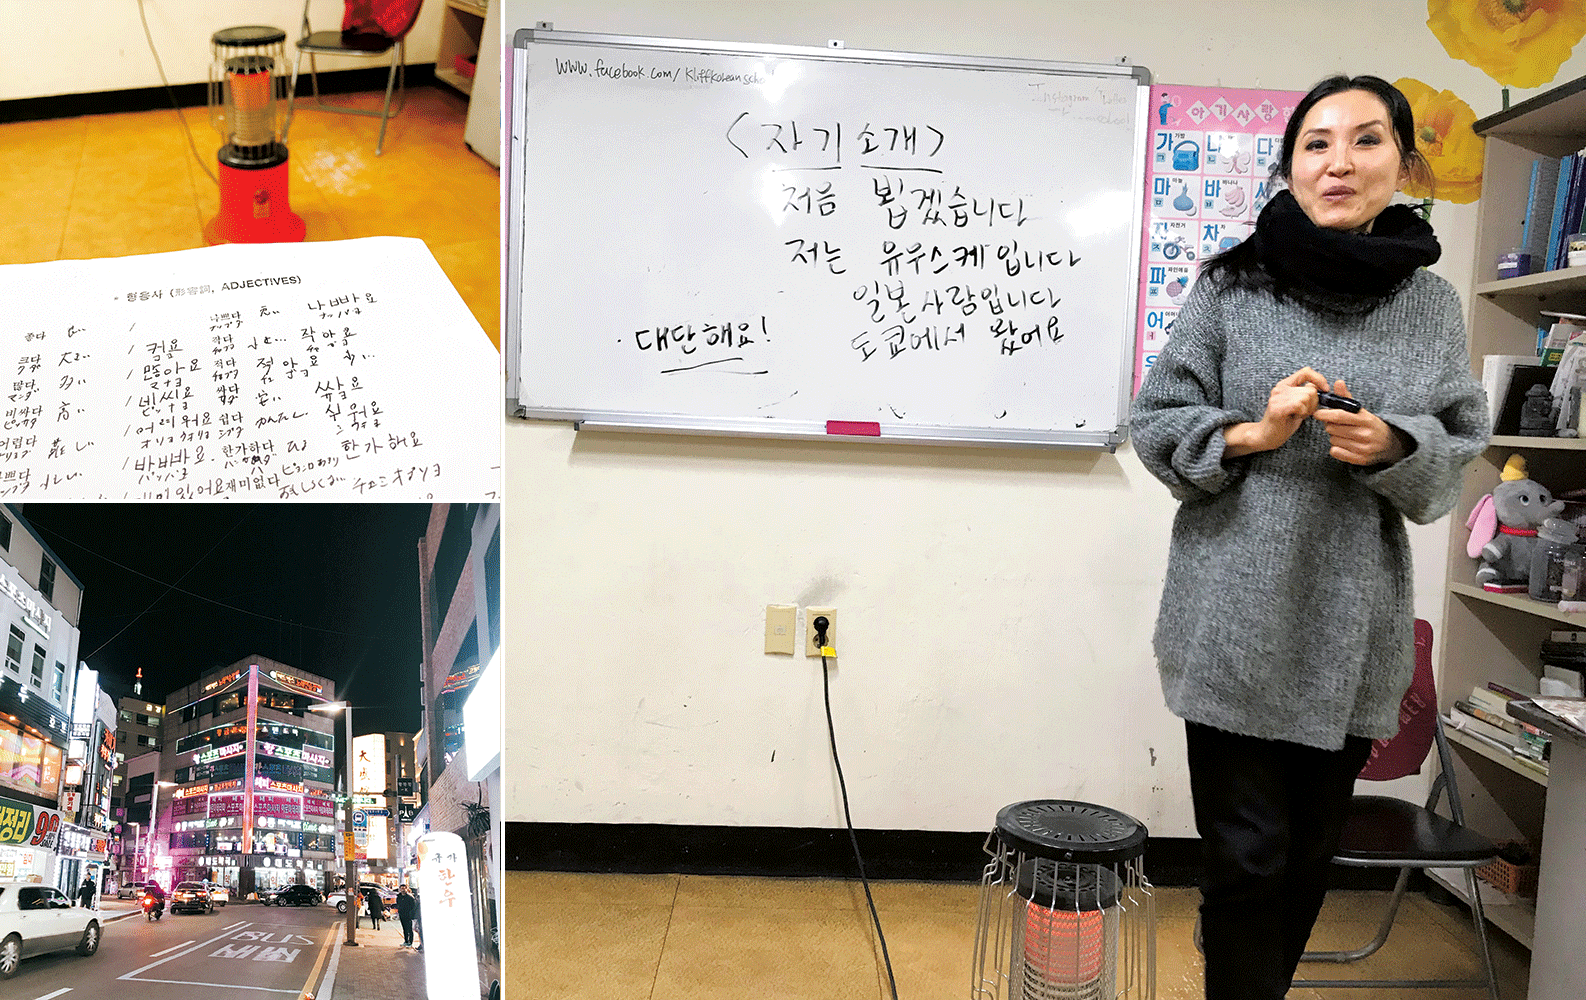 右・左上／朝からテンションの高い韓国人の先生。ノートを取るひまもないほど、怒濤の韓国語の質問が続く。左下／温泉場駅付近の繁華街。日本の温泉街とはまた違った雰囲気。